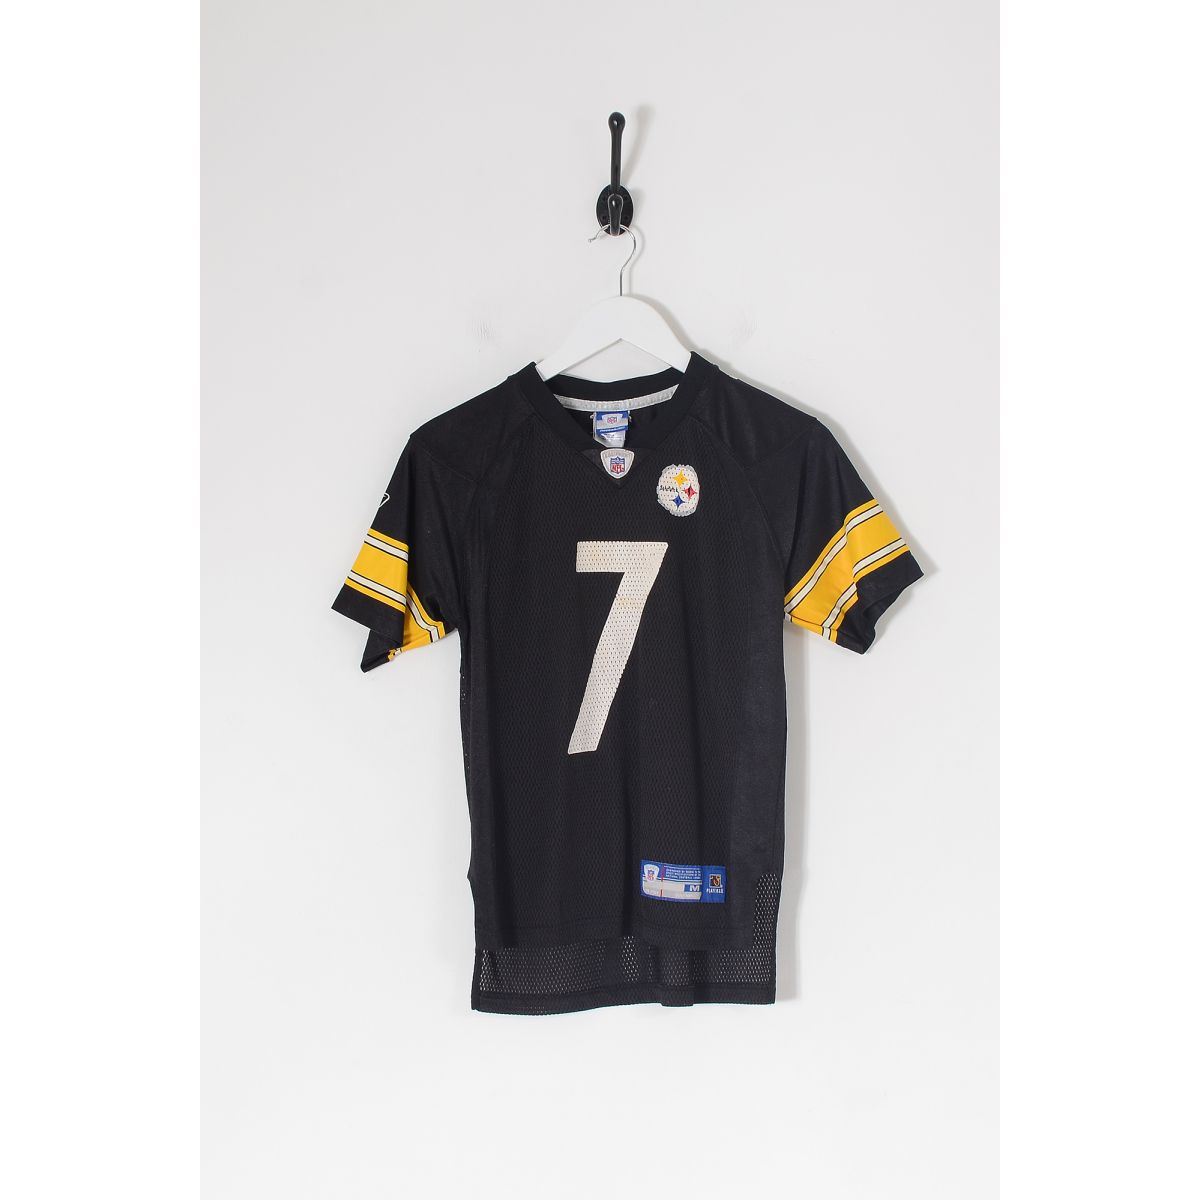 Vintage REEBOK NFL Pittsburgh Steelers American Football Jersey Black Medium